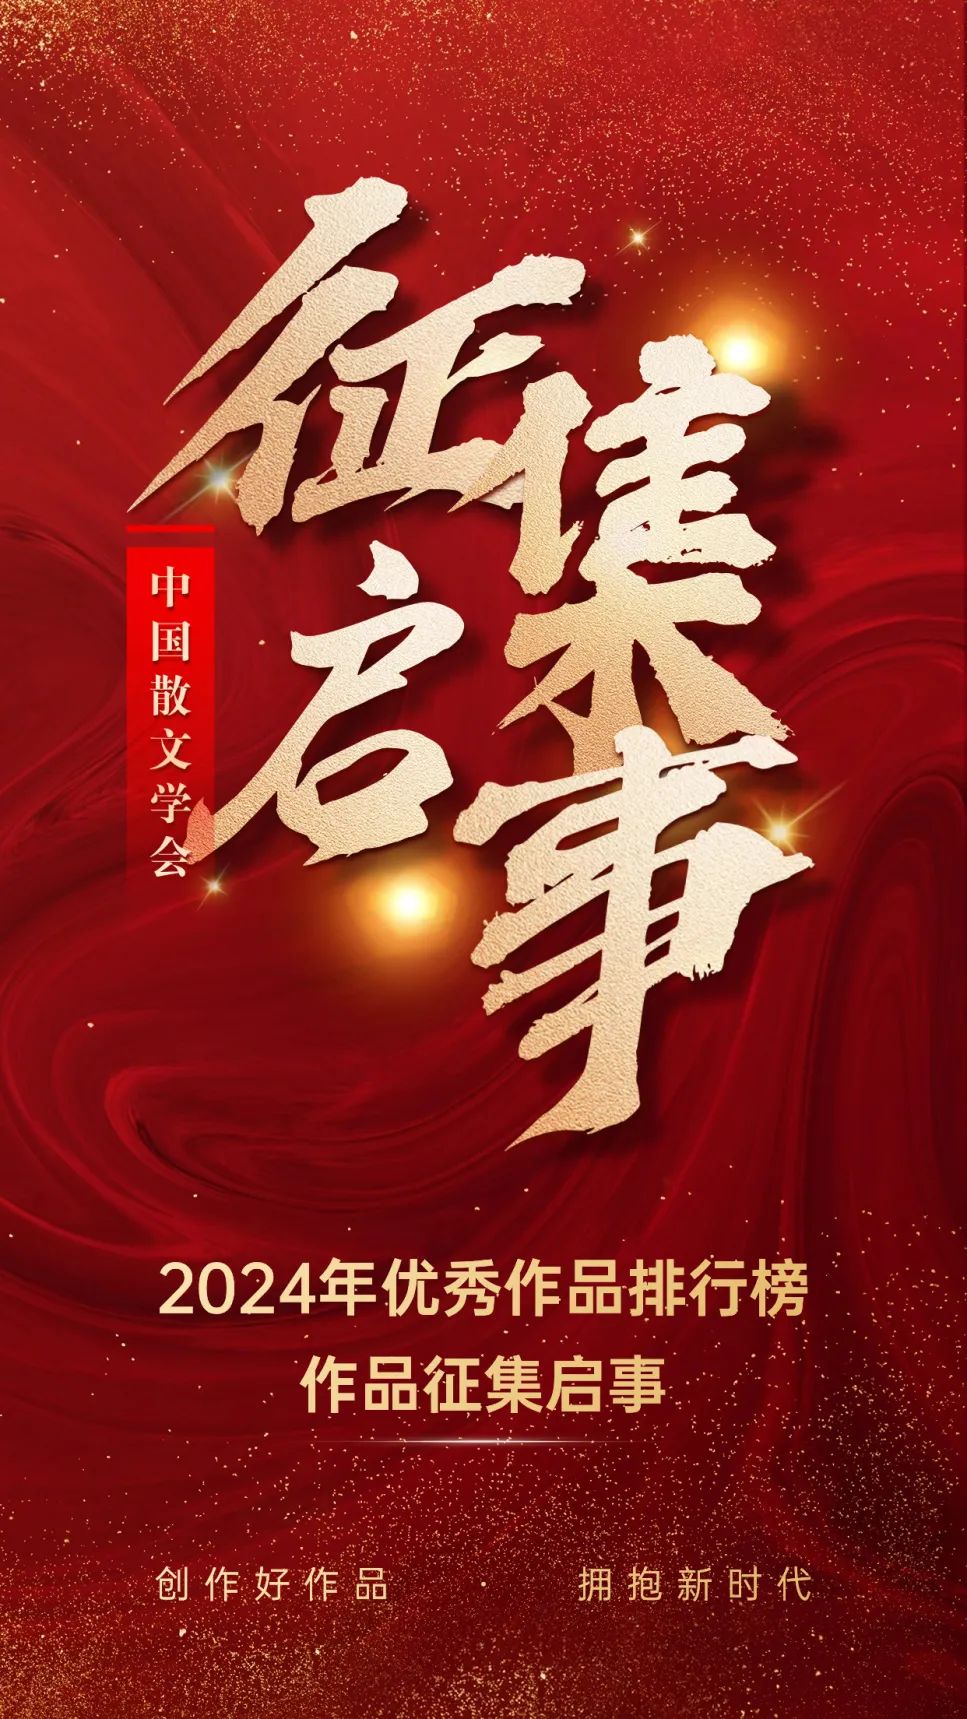 中国散文学会2024年优秀作品排行榜作品征集启事